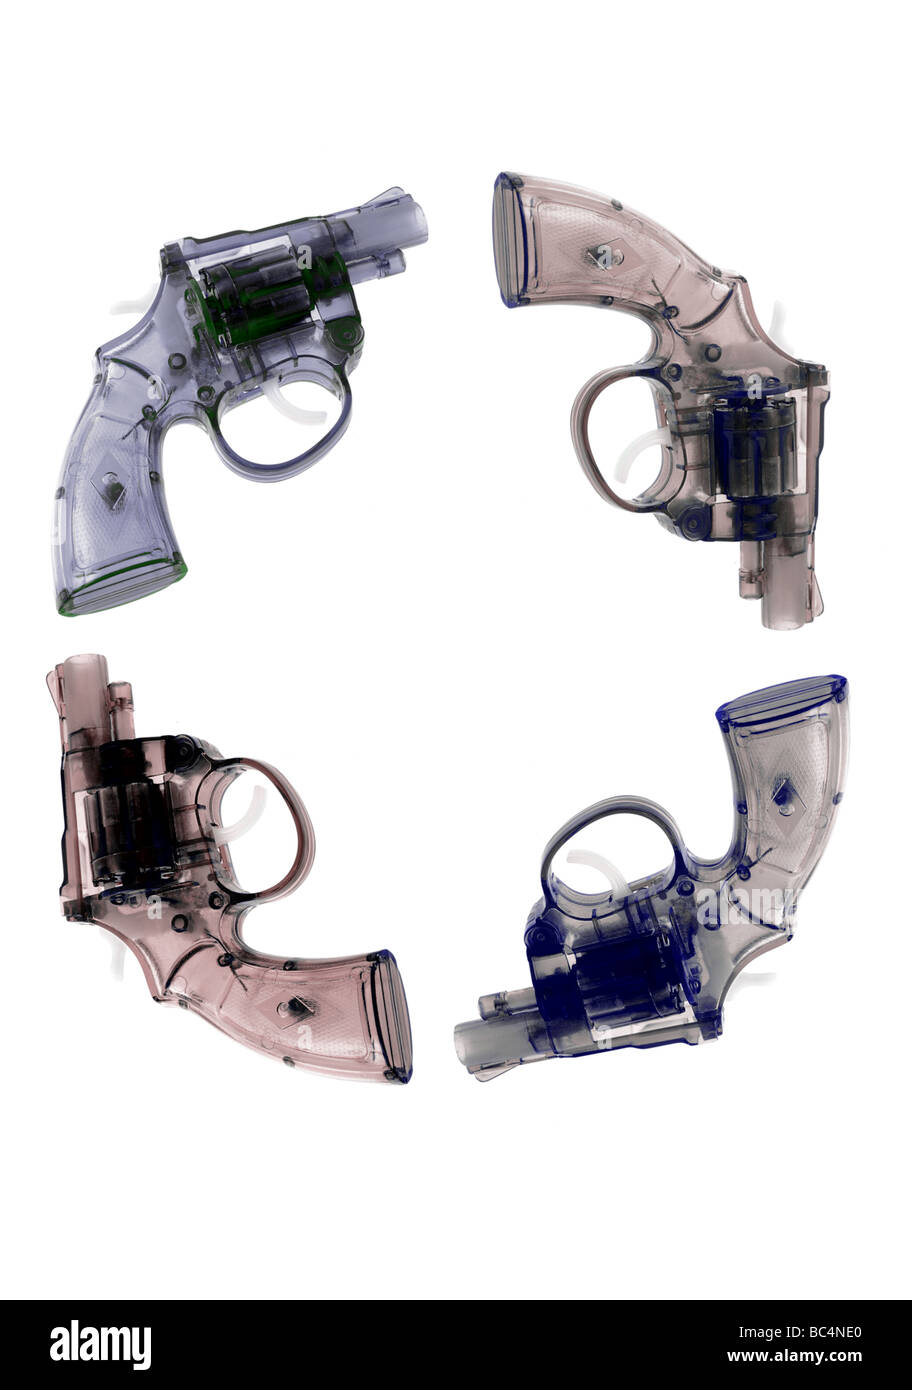 Vier Kunststoff-Spielzeug-Waffen auf weißem Hintergrund angeordnet Stockfoto